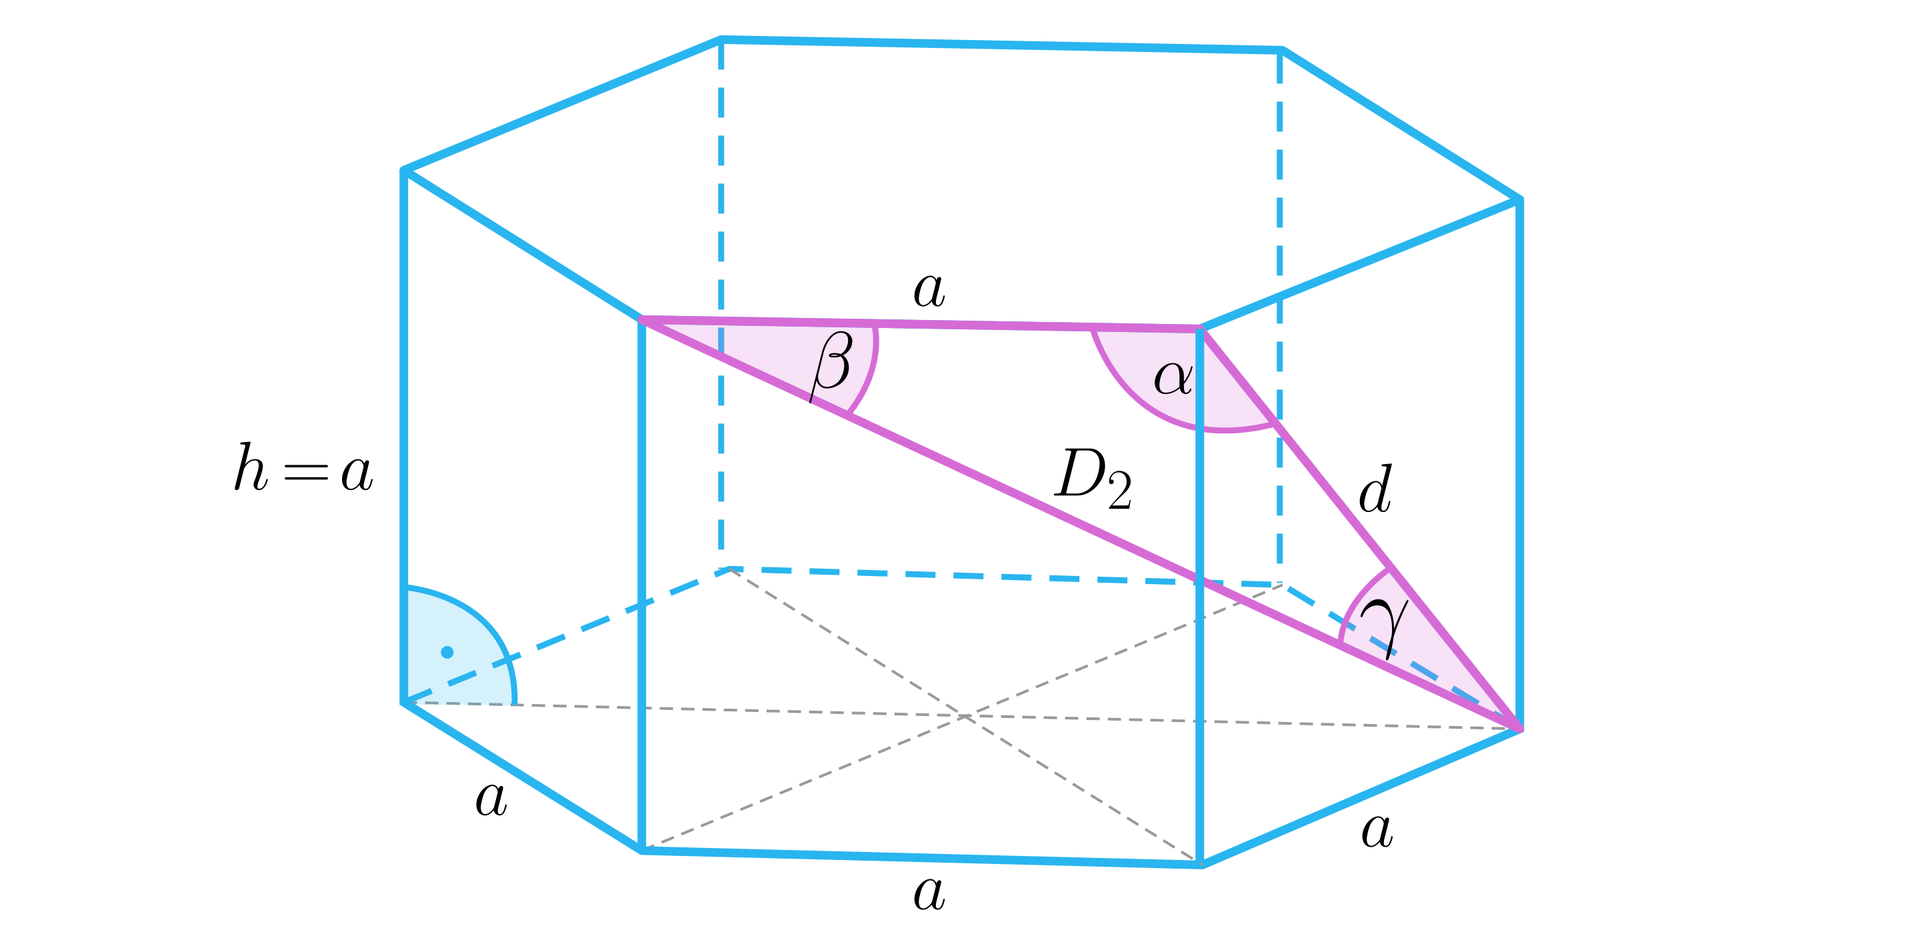 Na ilustracji przedstawiono graniastosłup prawidłowy sześciokątny o krawędzi podstawy a, oraz wysokości h. Występuje zależność h=a. Podstawę graniastosłupa podzielono na 6 przystających do siebie trójkątów. Poprowadzono przekątną d, ściany bocznej oraz przekątną D2 całej bryły. Obie przekątne wychodzą z jednego wierzchołka dolnej podstawy i łączy je krawędź górnej podstawy. Utworzono trójkąt o bokach D2, d oraz a. Zaznaczono. Kąt α między ramionami a i d. Kąt β między ramionami a i D2, oraz kąt γ między ramionami d i D2.